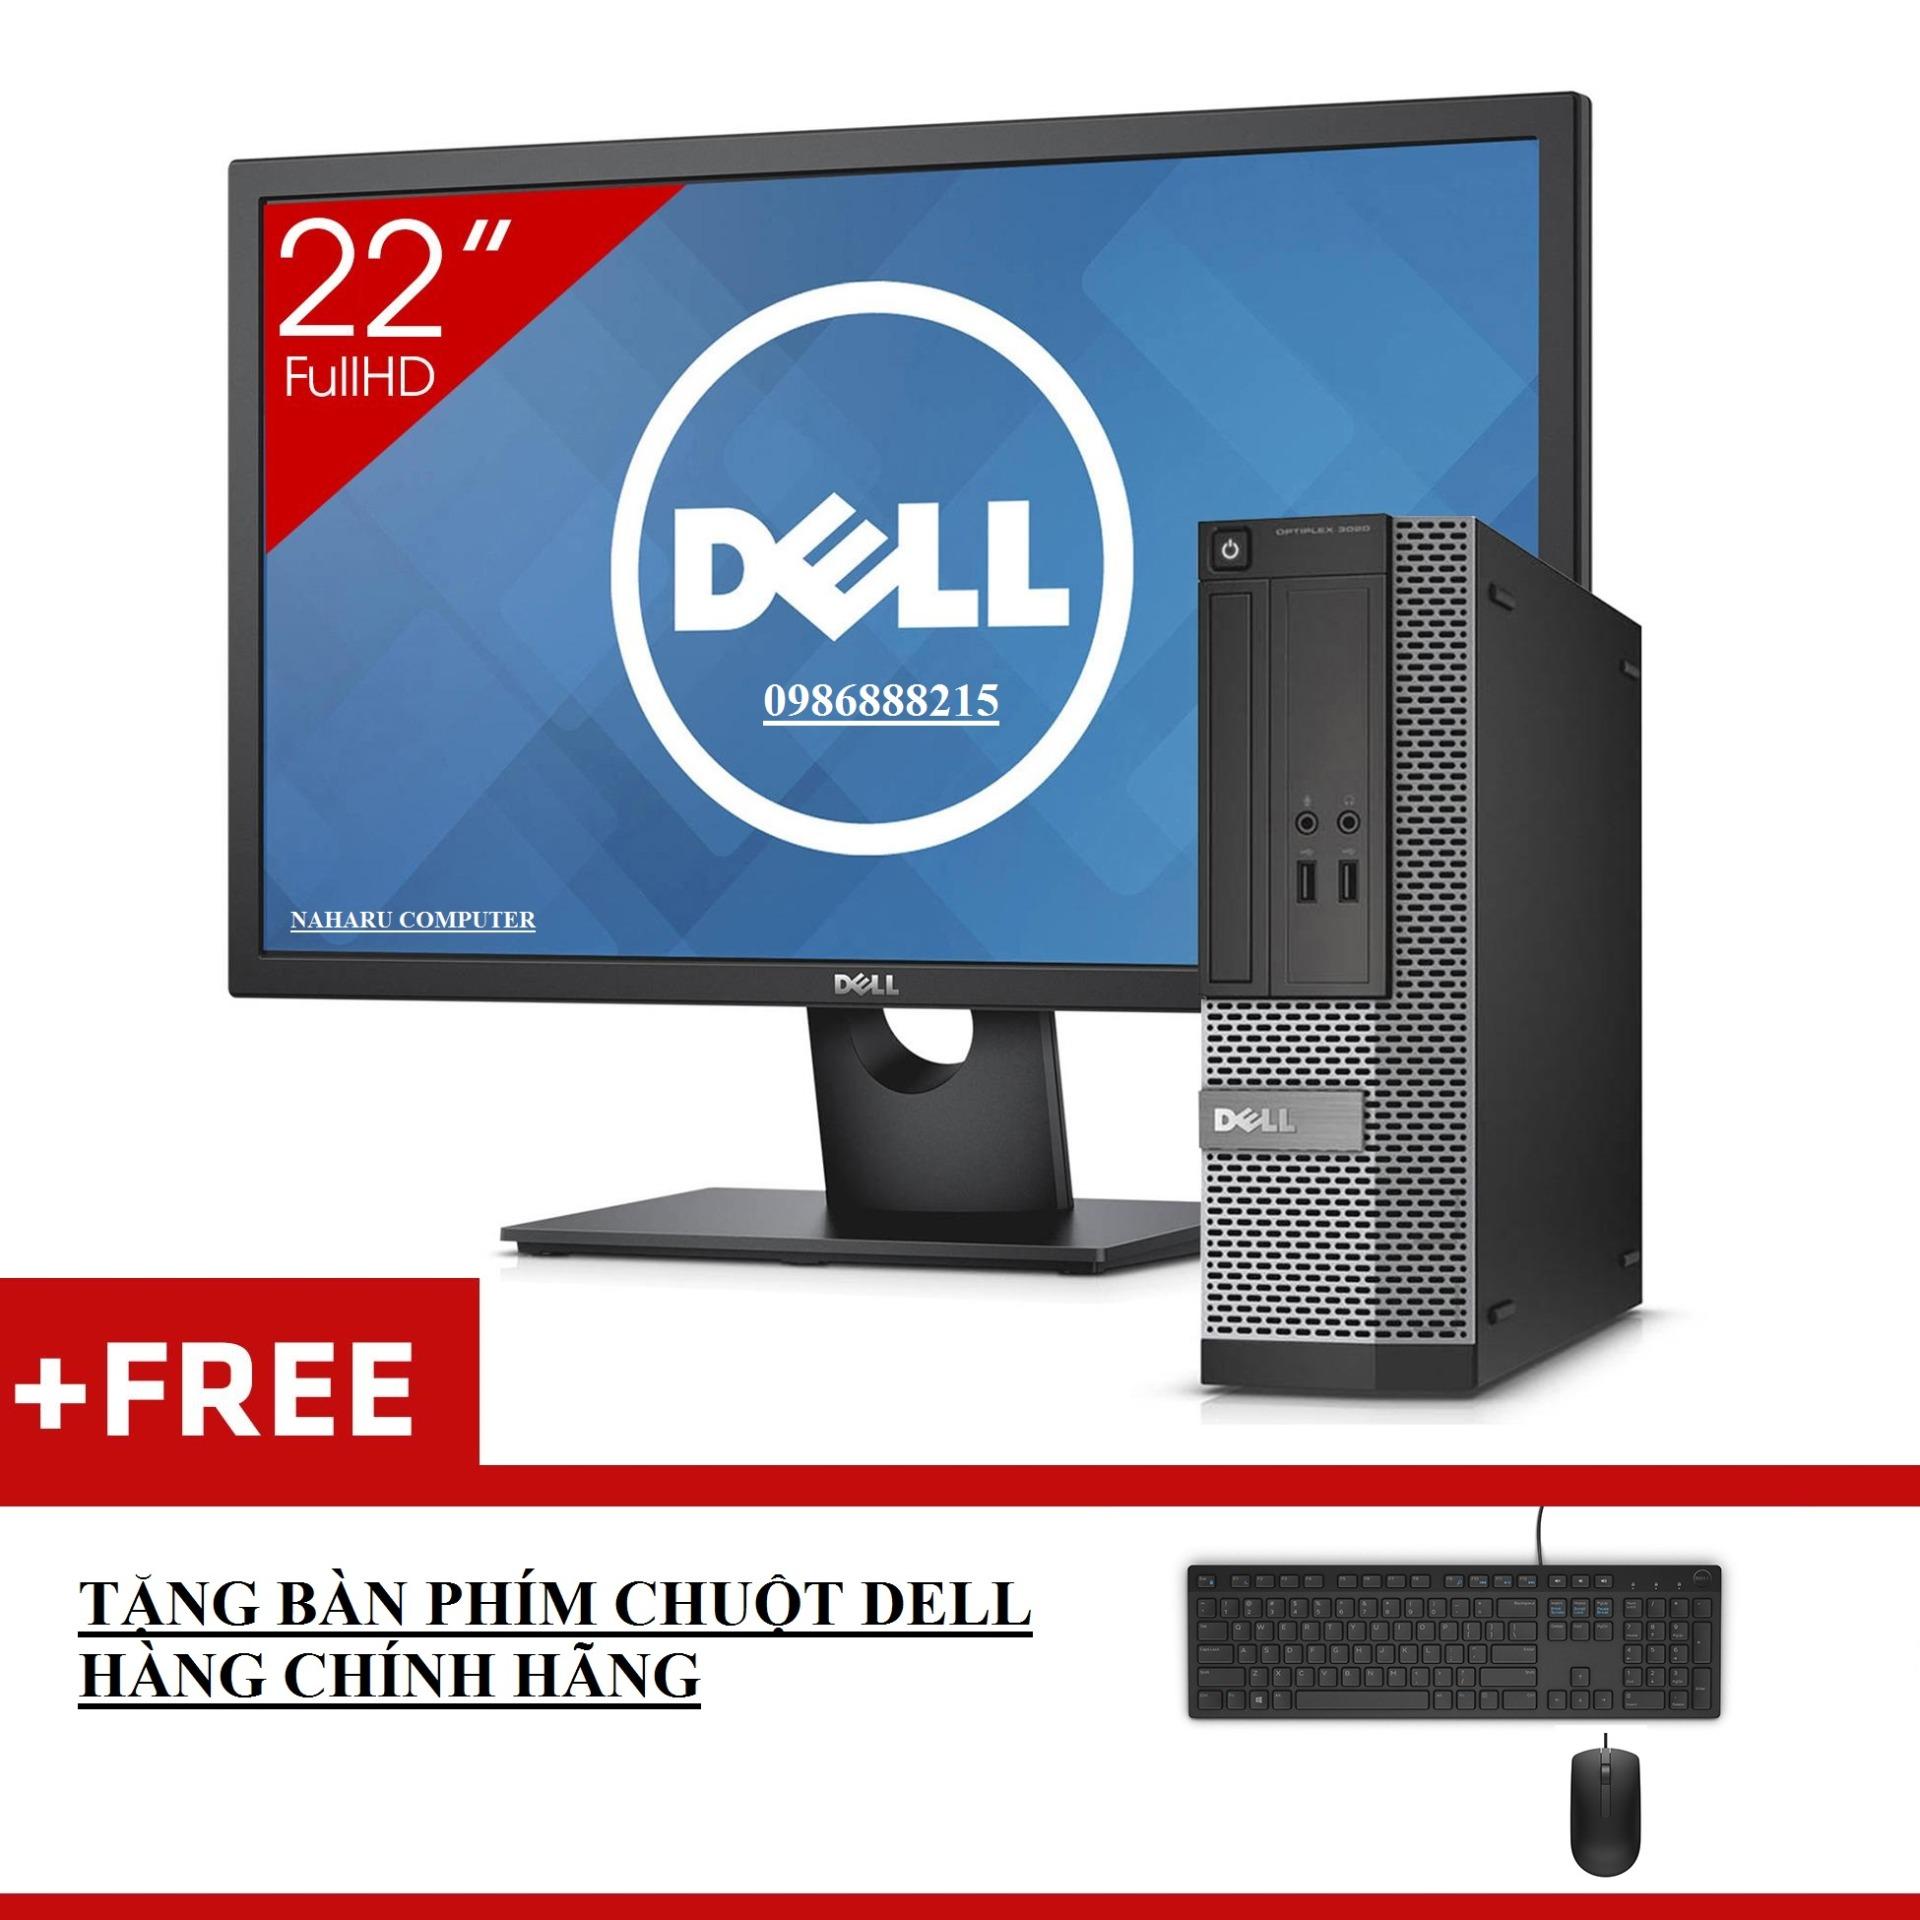 [Trả góp 0%]Máy Tính Để Bàn Dell Optiplex 3020 SFF + Màn Hình Dell 22inch Full-HD (Core I3 4130 Ram 8GB HDD 1TB) + Quà Tặng - Hàng Nhập Khẩu